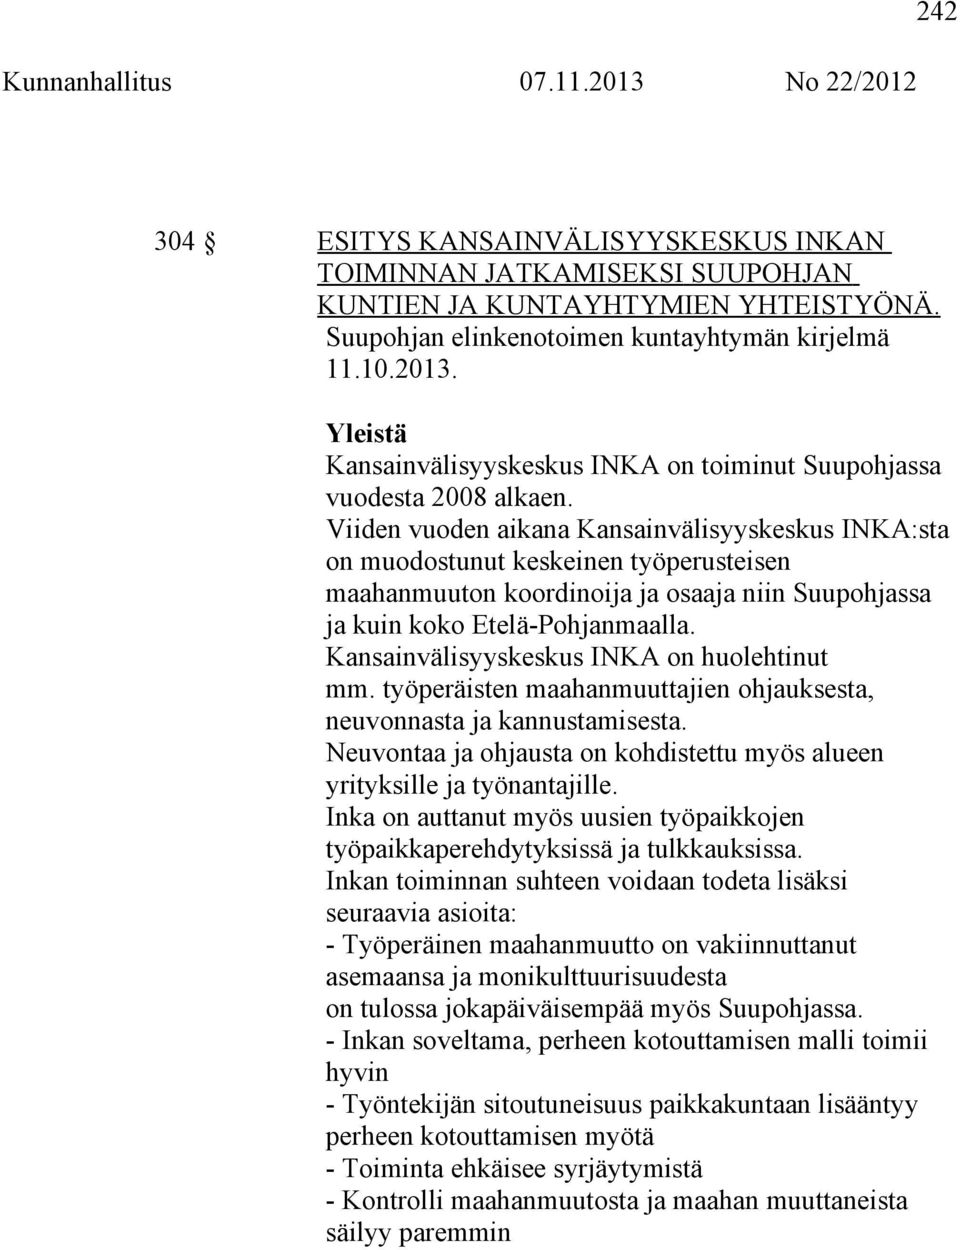 Viiden vuoden aikana Kansainvälisyyskeskus INKA:sta on muodostunut keskeinen työperusteisen maahanmuuton koordinoija ja osaaja niin Suupohjassa ja kuin koko Etelä-Pohjanmaalla.